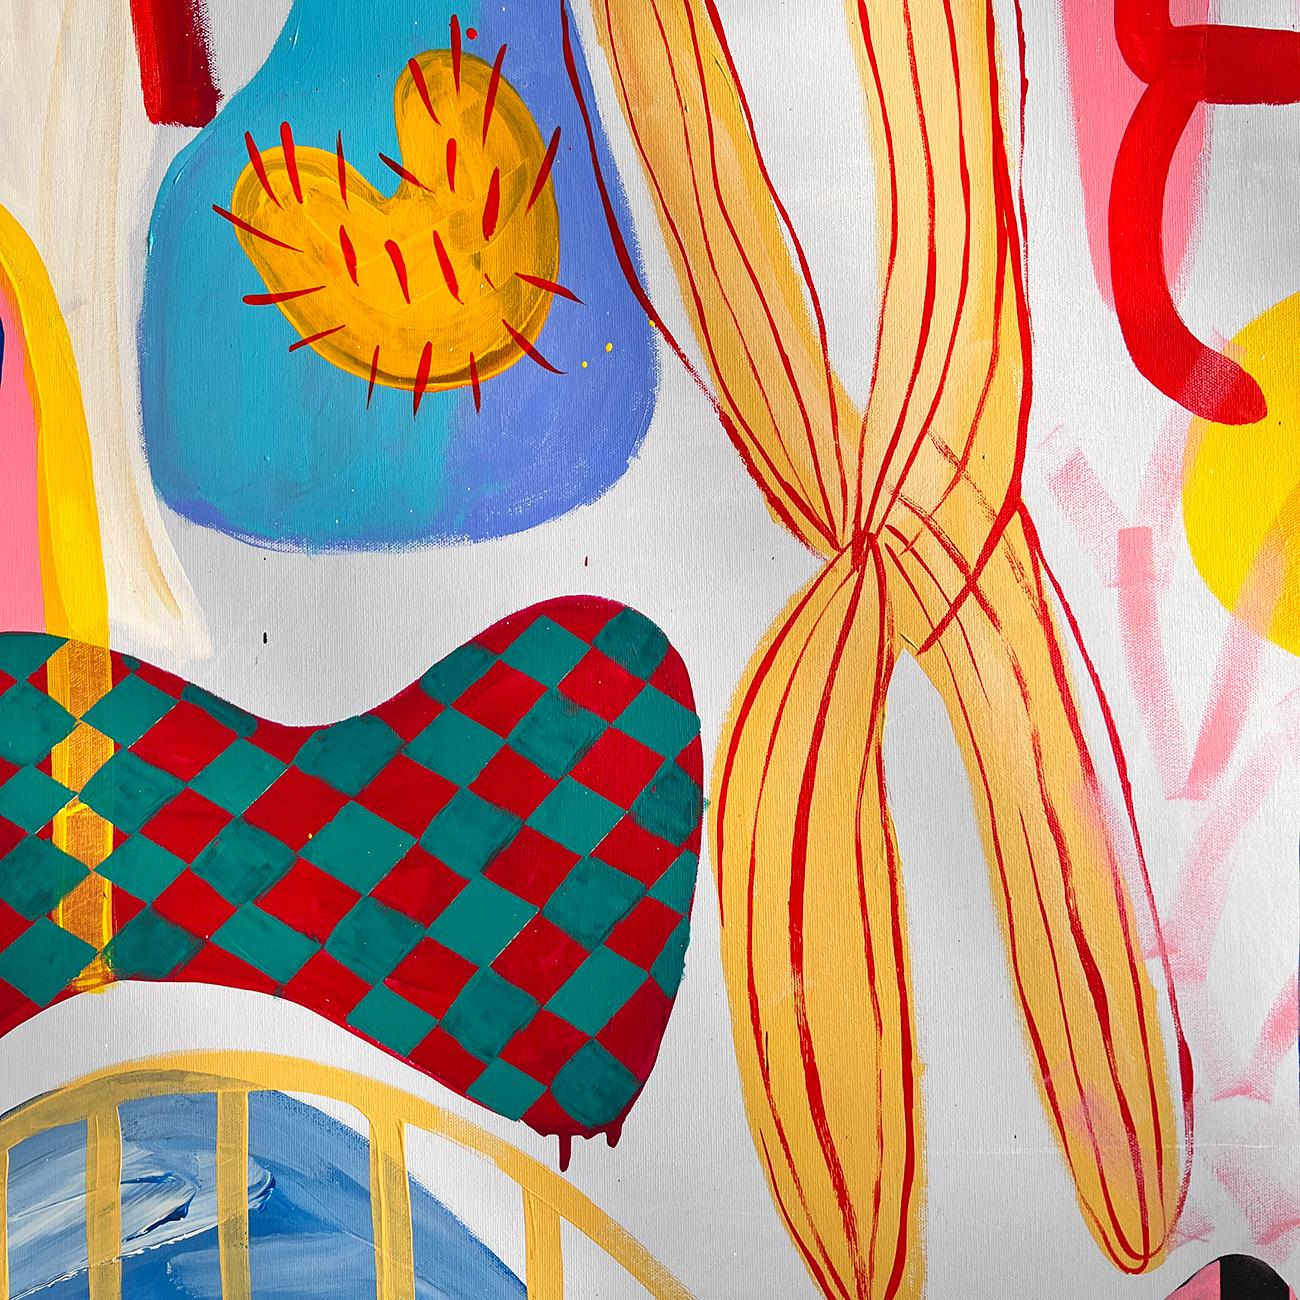 Paradiso I (Abstrakte Malerei)

Acryl und Gouache auf Leinwand - ungerahmt

Das Kunstwerk ist exklusiv für IdeelArt.
Daniela Marin ist eine Pionierin auf dem Gebiet der abstrakten Kunst Südamerikas. Sie versteht es meisterhaft, eine lebendige